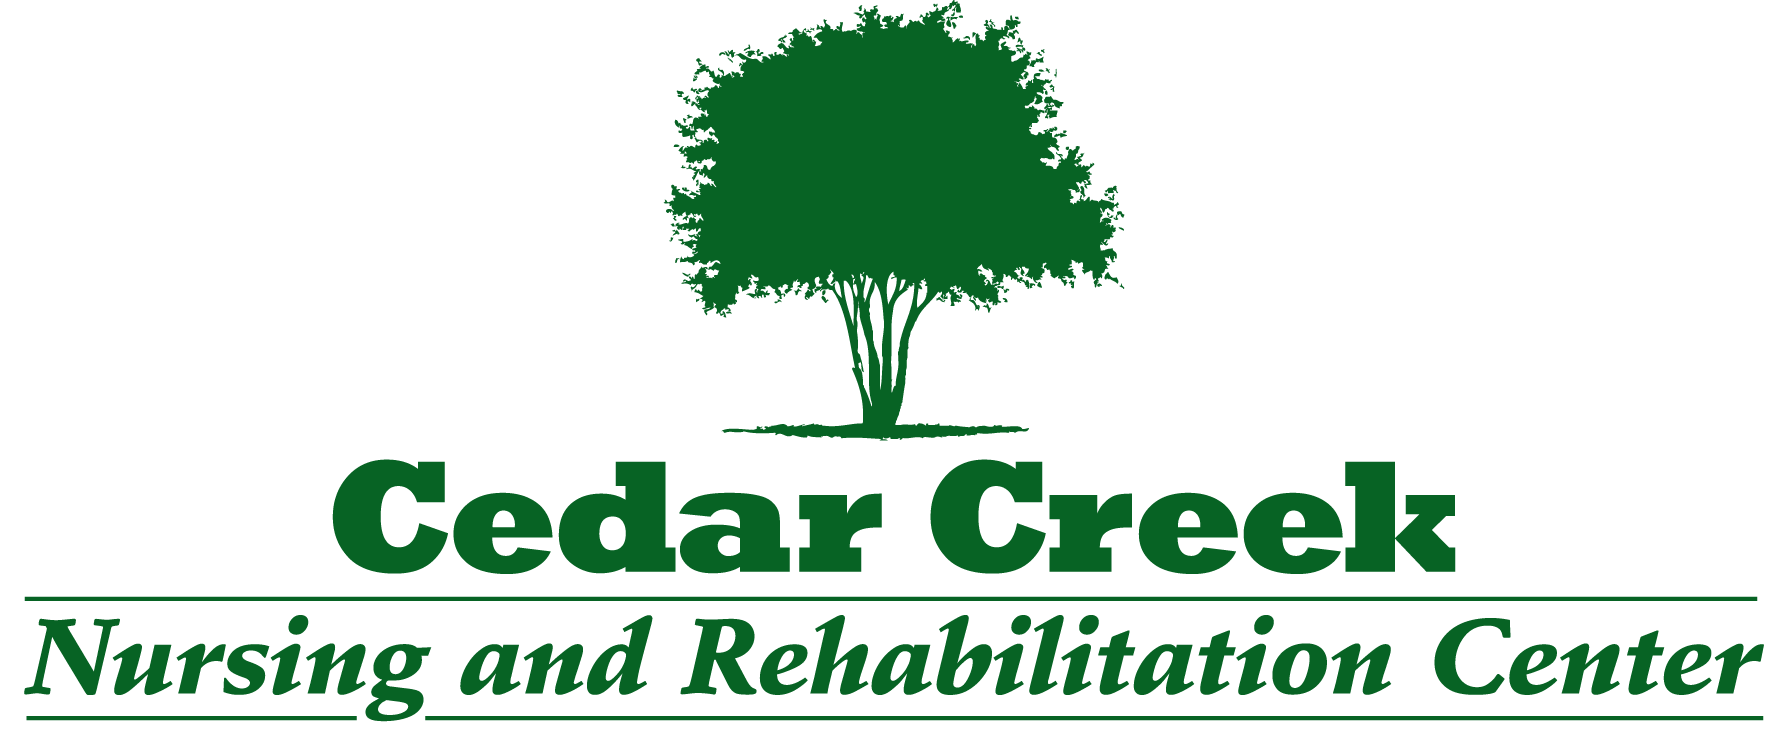 Cedar Creek Nursing and Rehabilitation Center